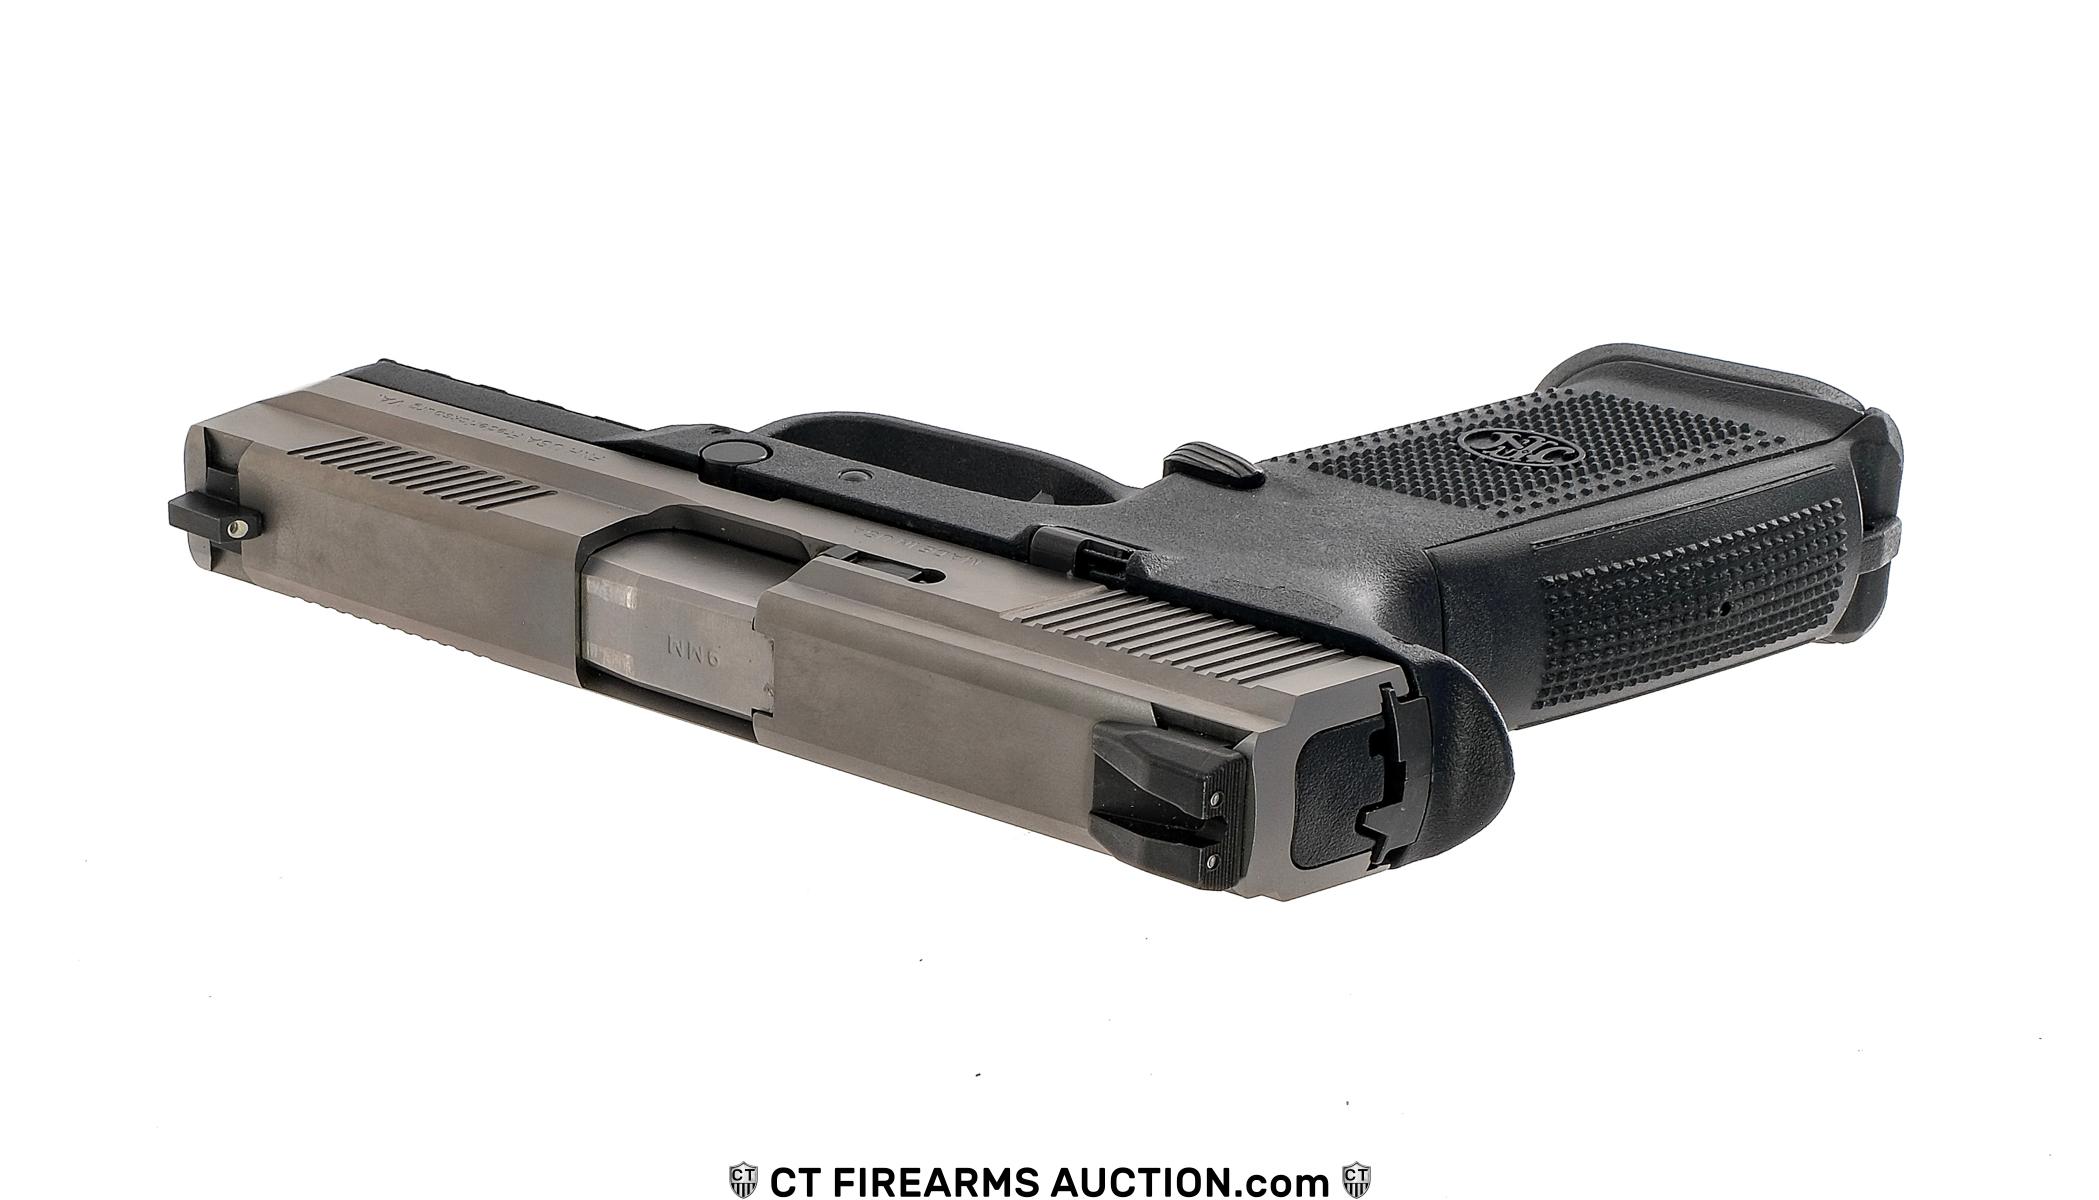 FNH FNS-9 9mm Semi-Auto Pistol